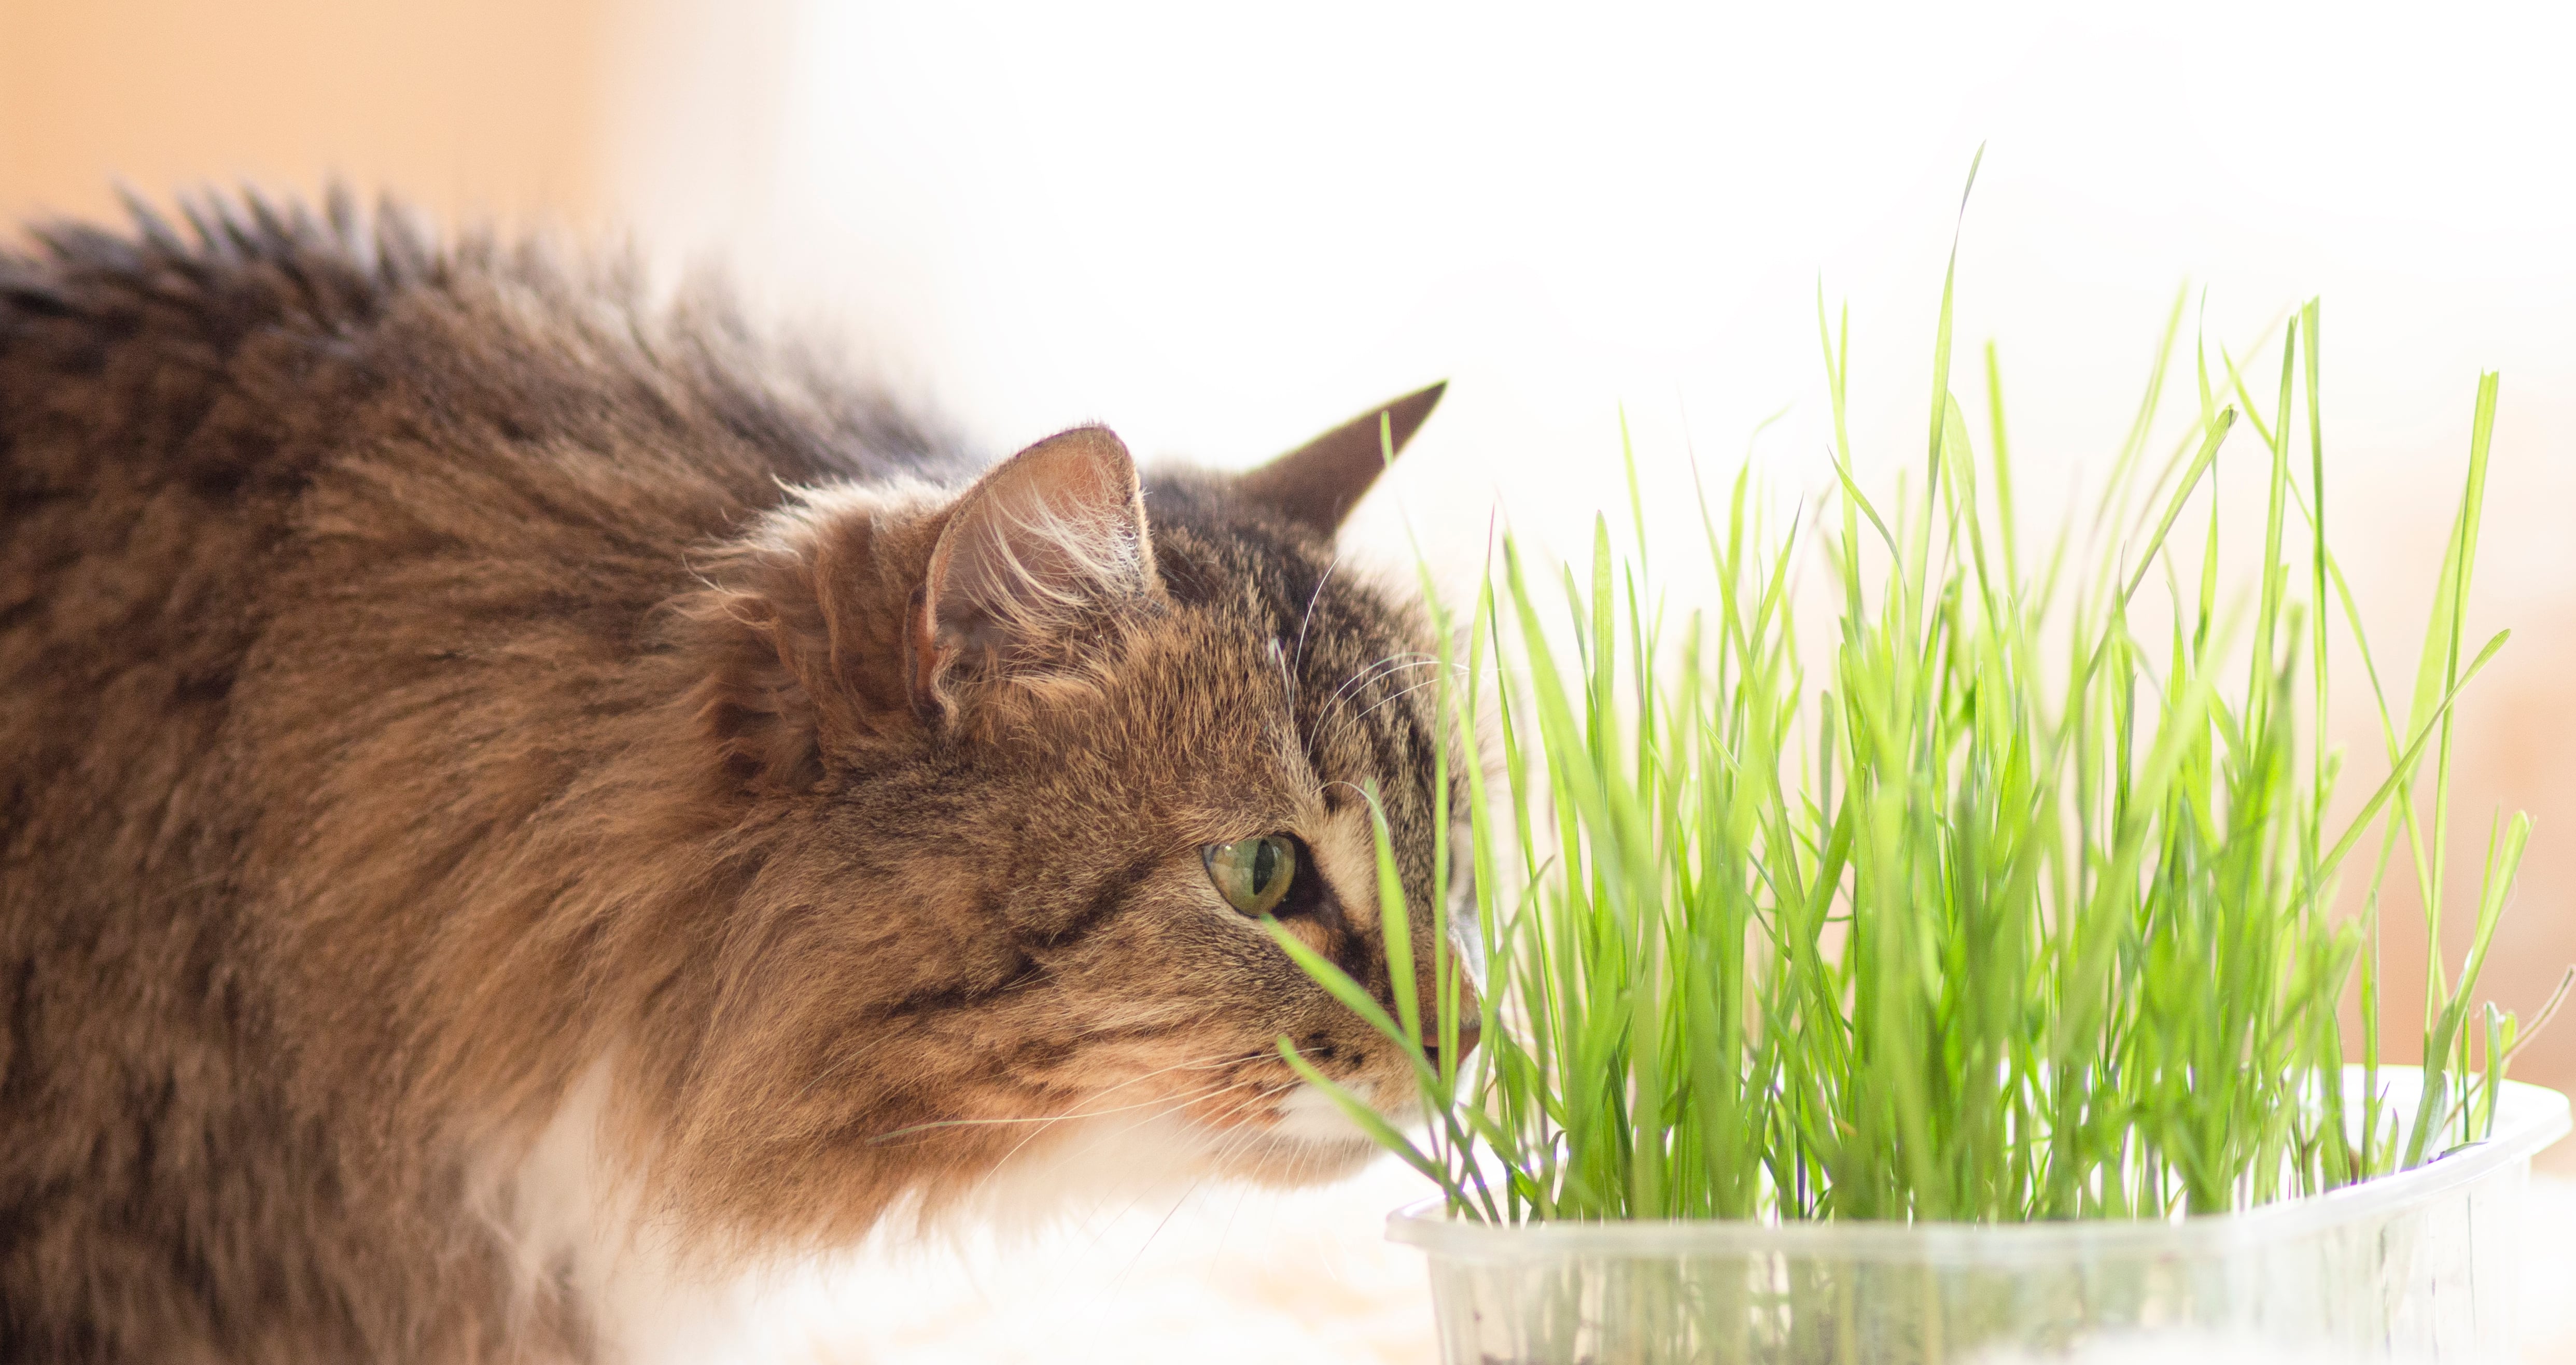 Herbe à chat : Tout savoir sur ses effets et ses bienfaits